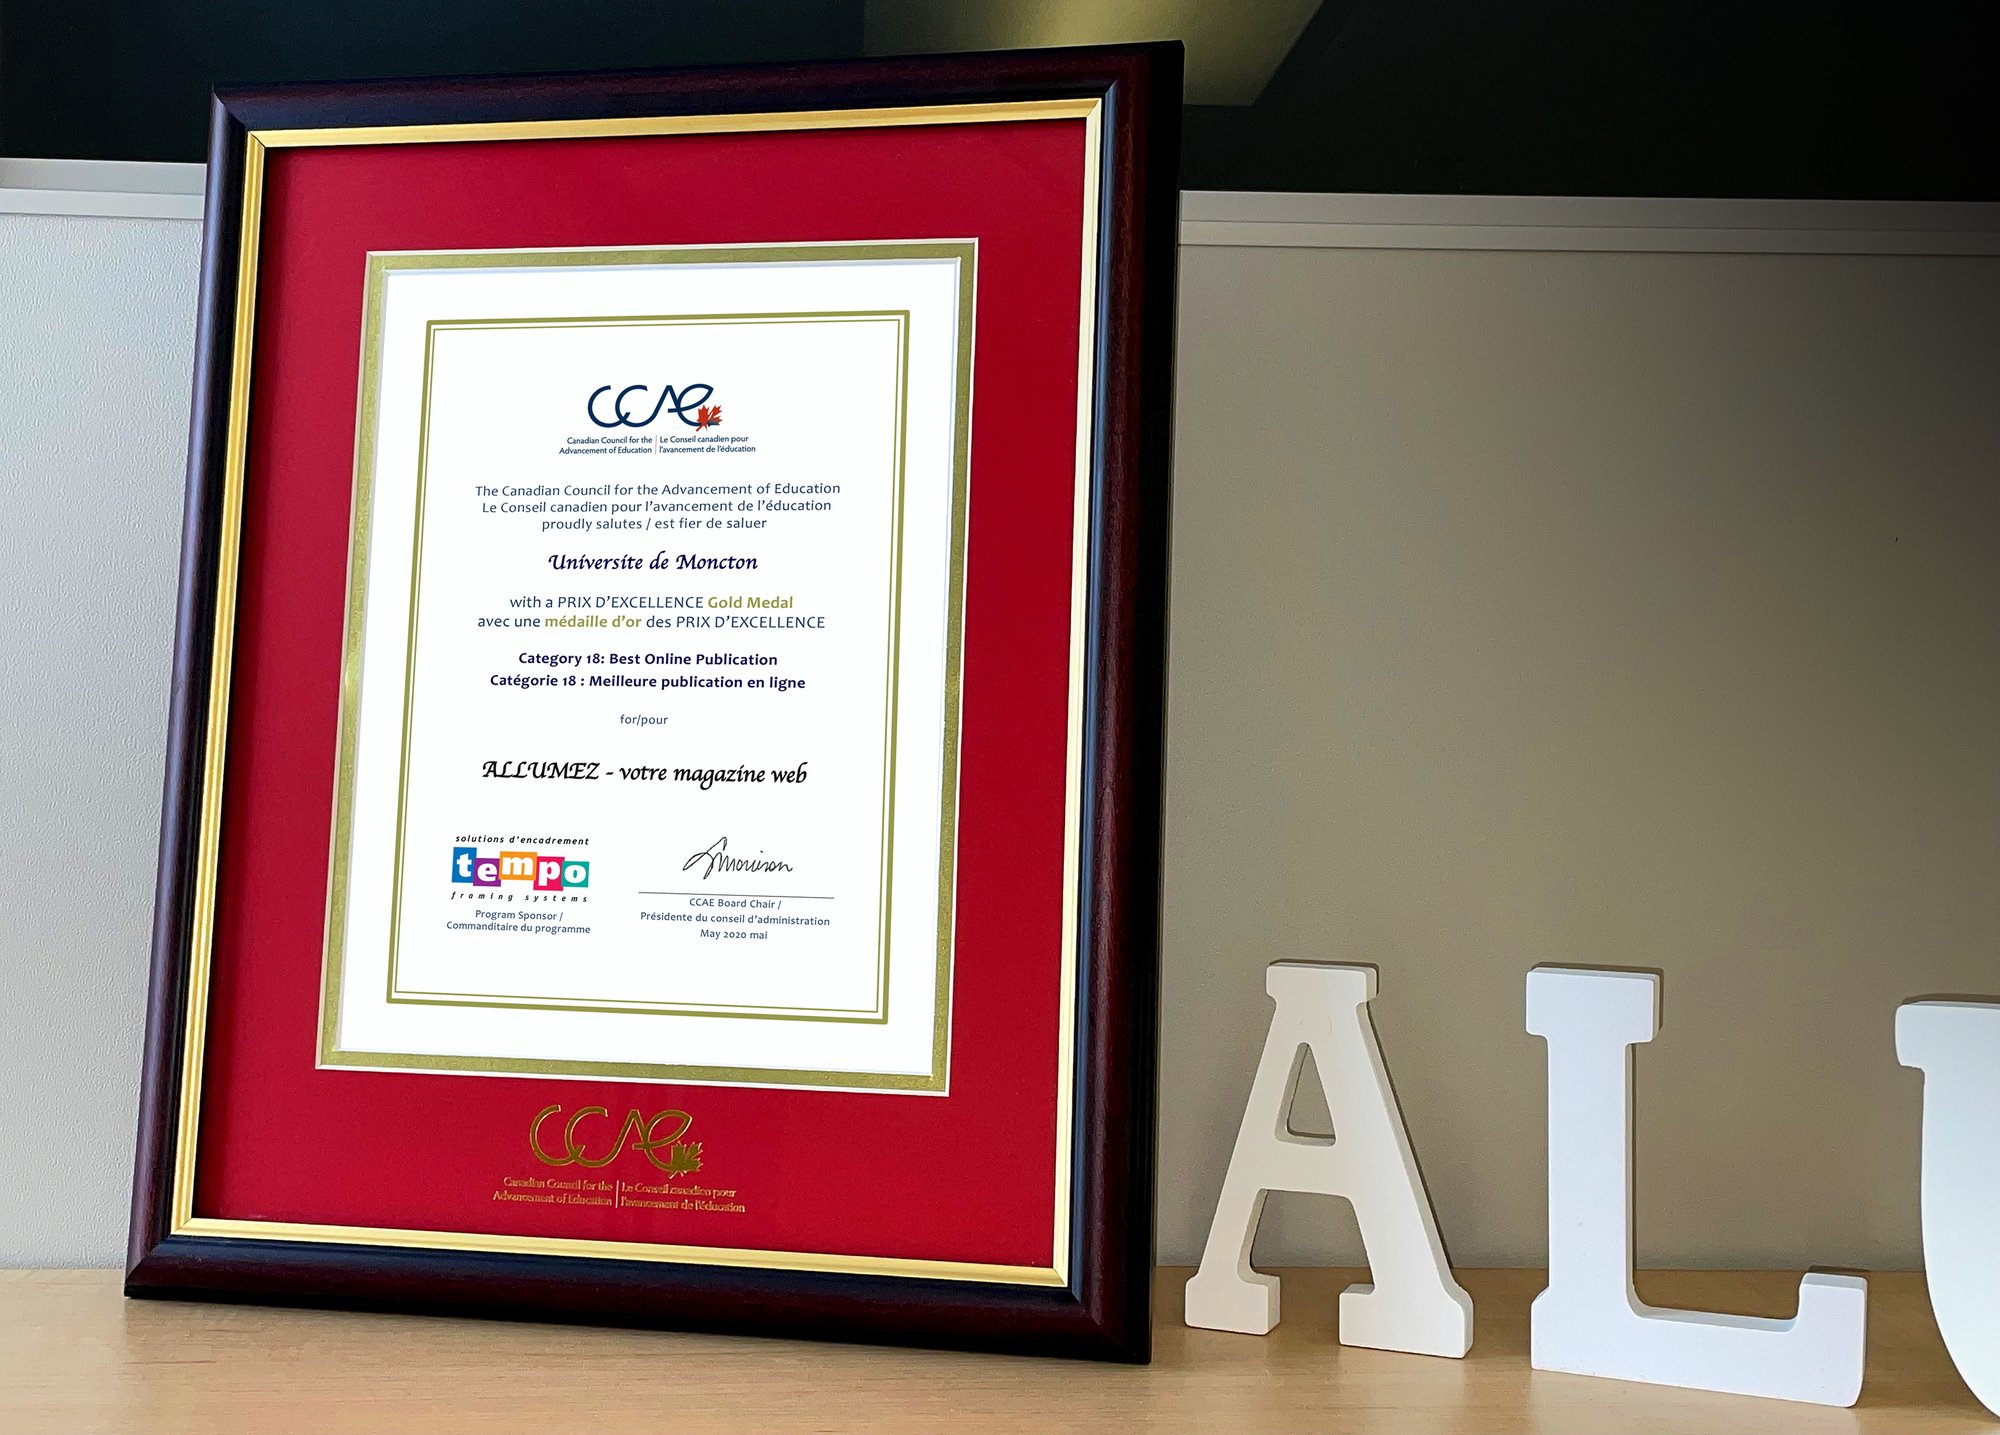 CCAE award and certificate for Allumez